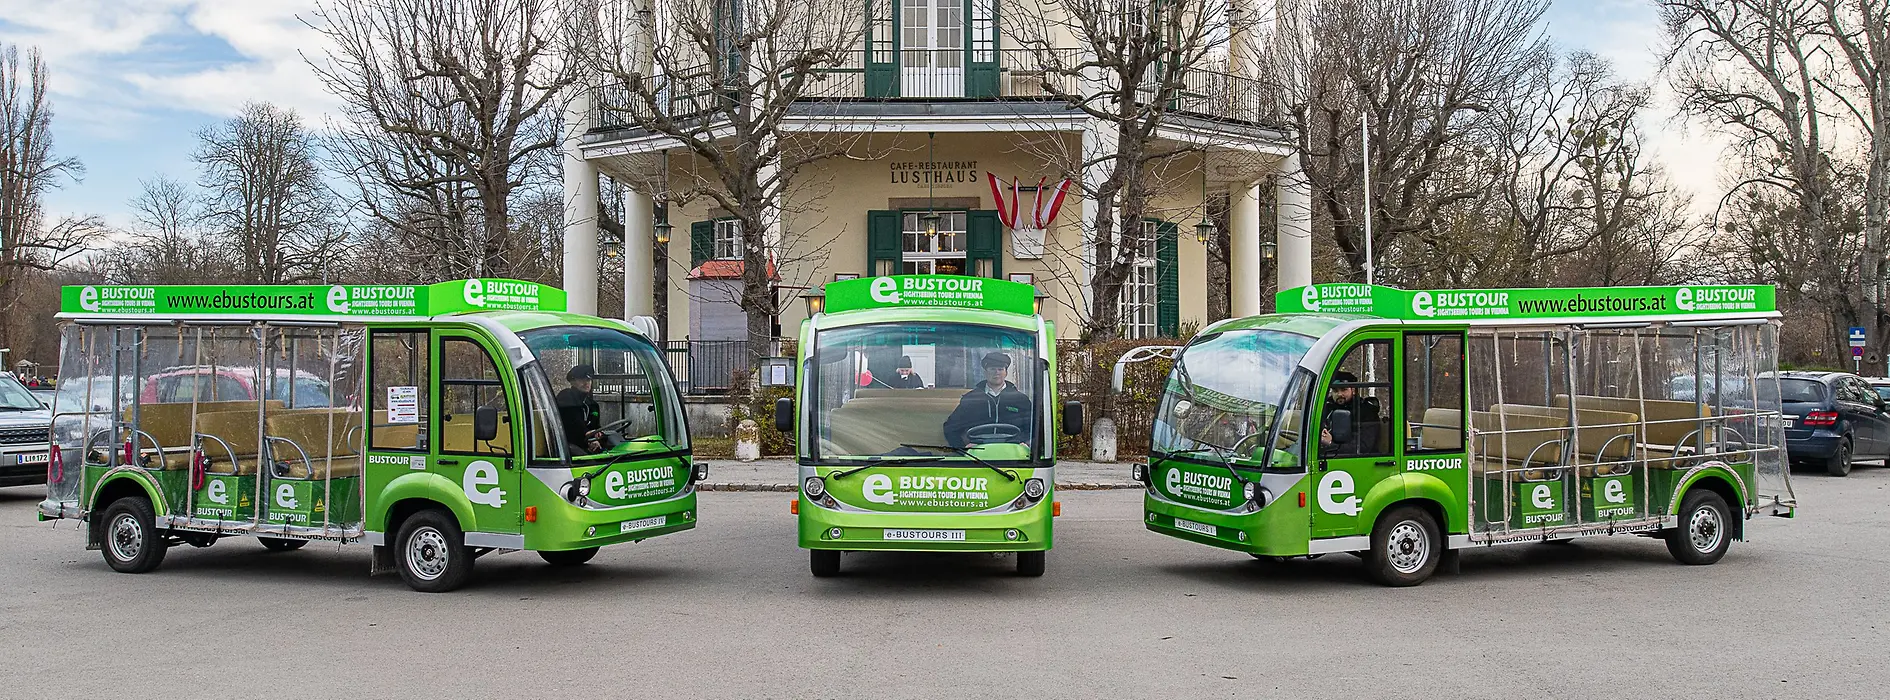 Drei Busse vor Wiener Lusthaus